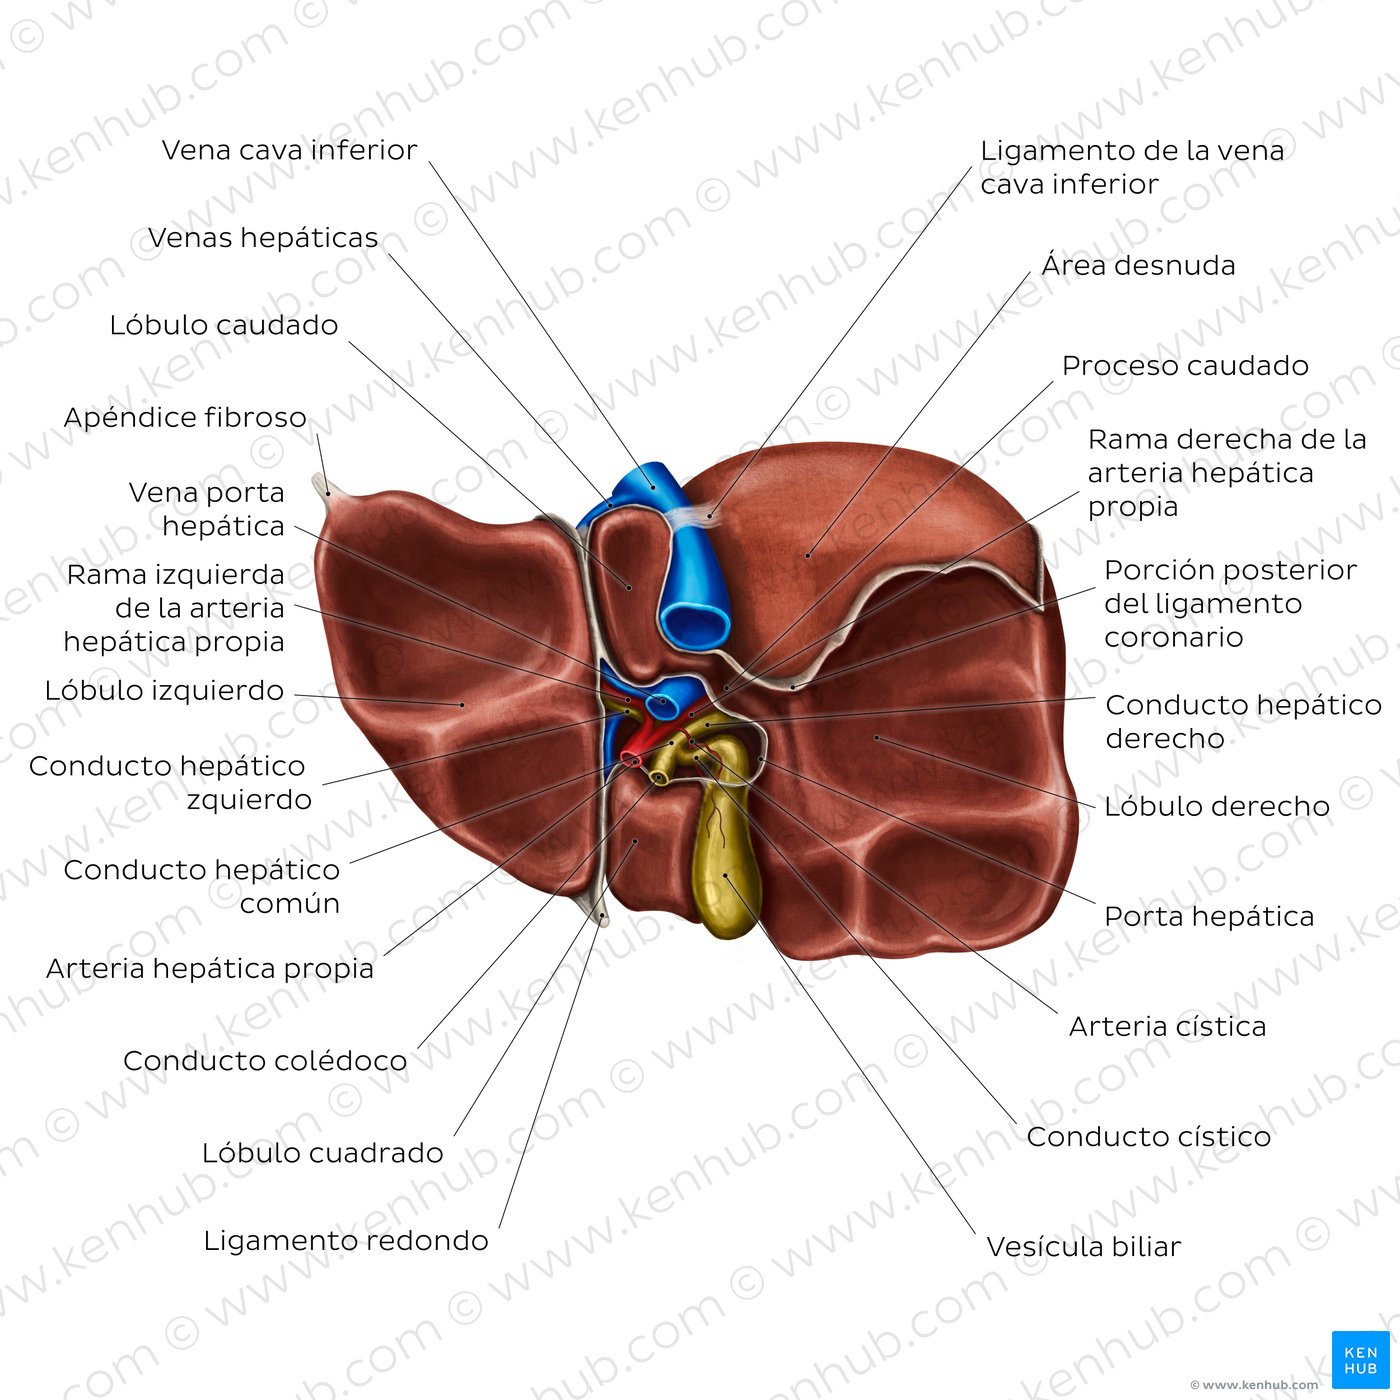 Anatomía de la cara visceral del hígado: Vista inferior